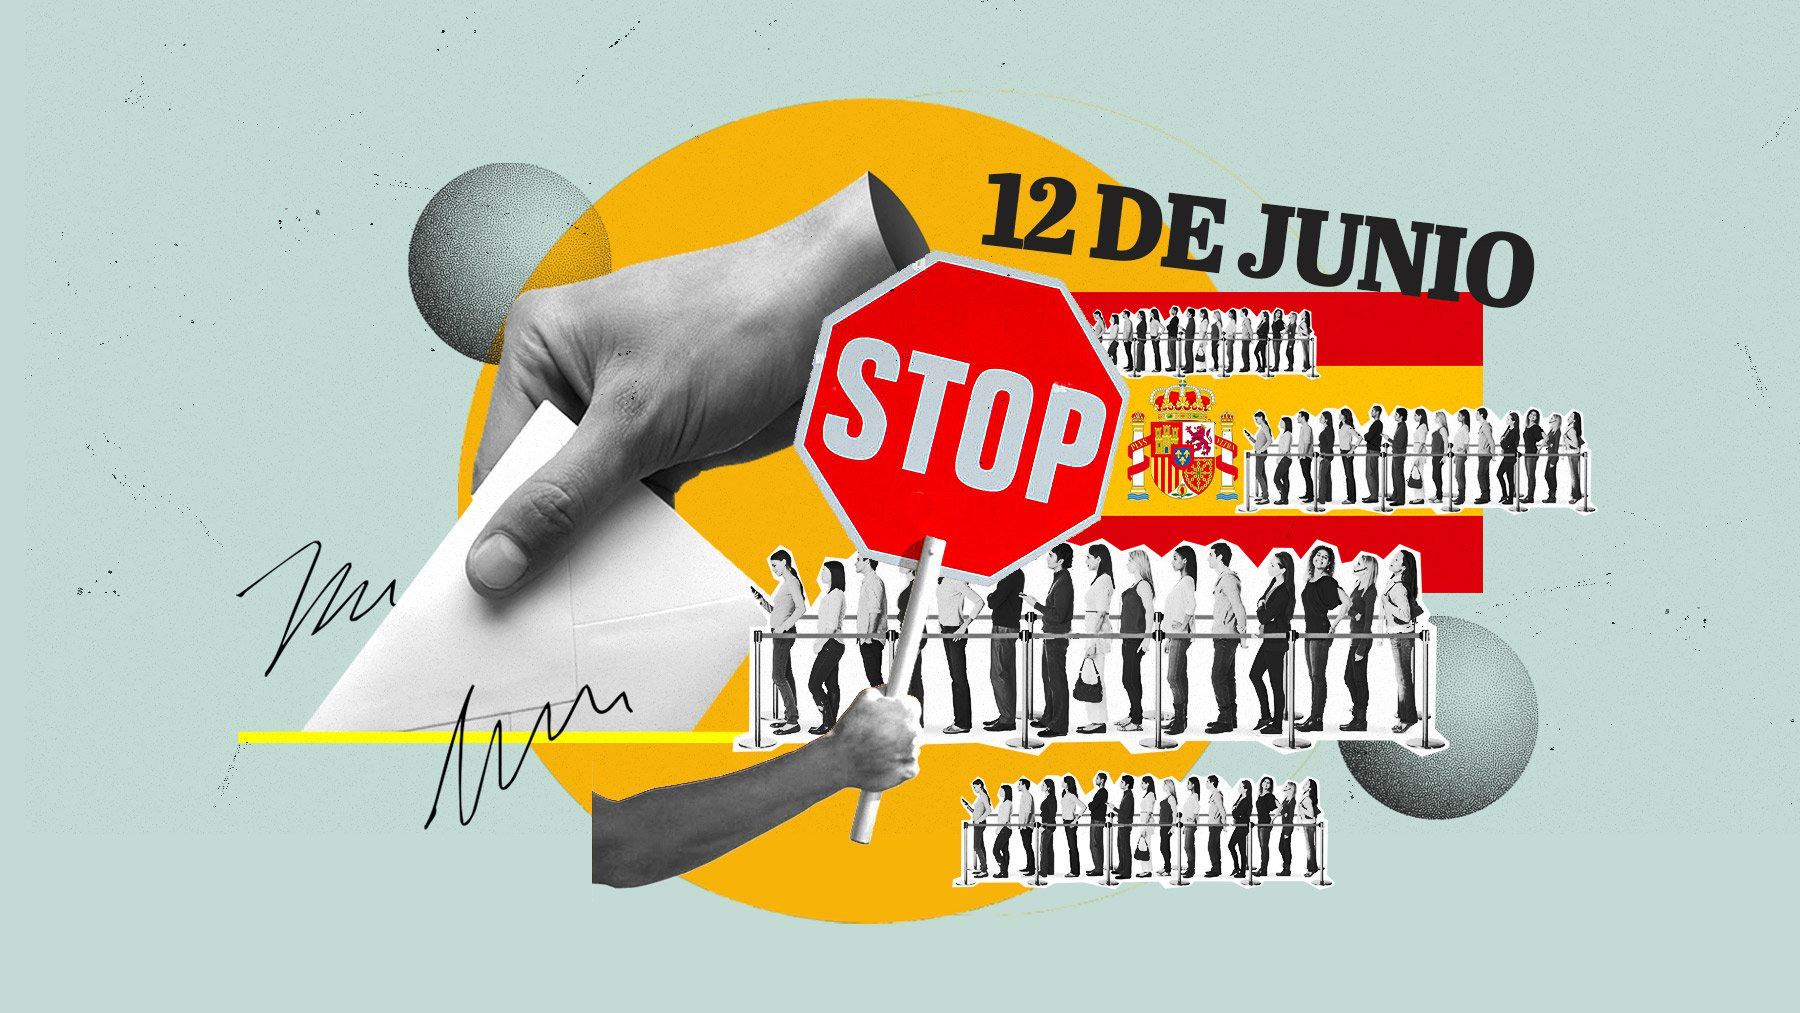 Los españoles que se vayan a vivir fuera no podrán votar desde el extranjero a partir del 12 de junio.